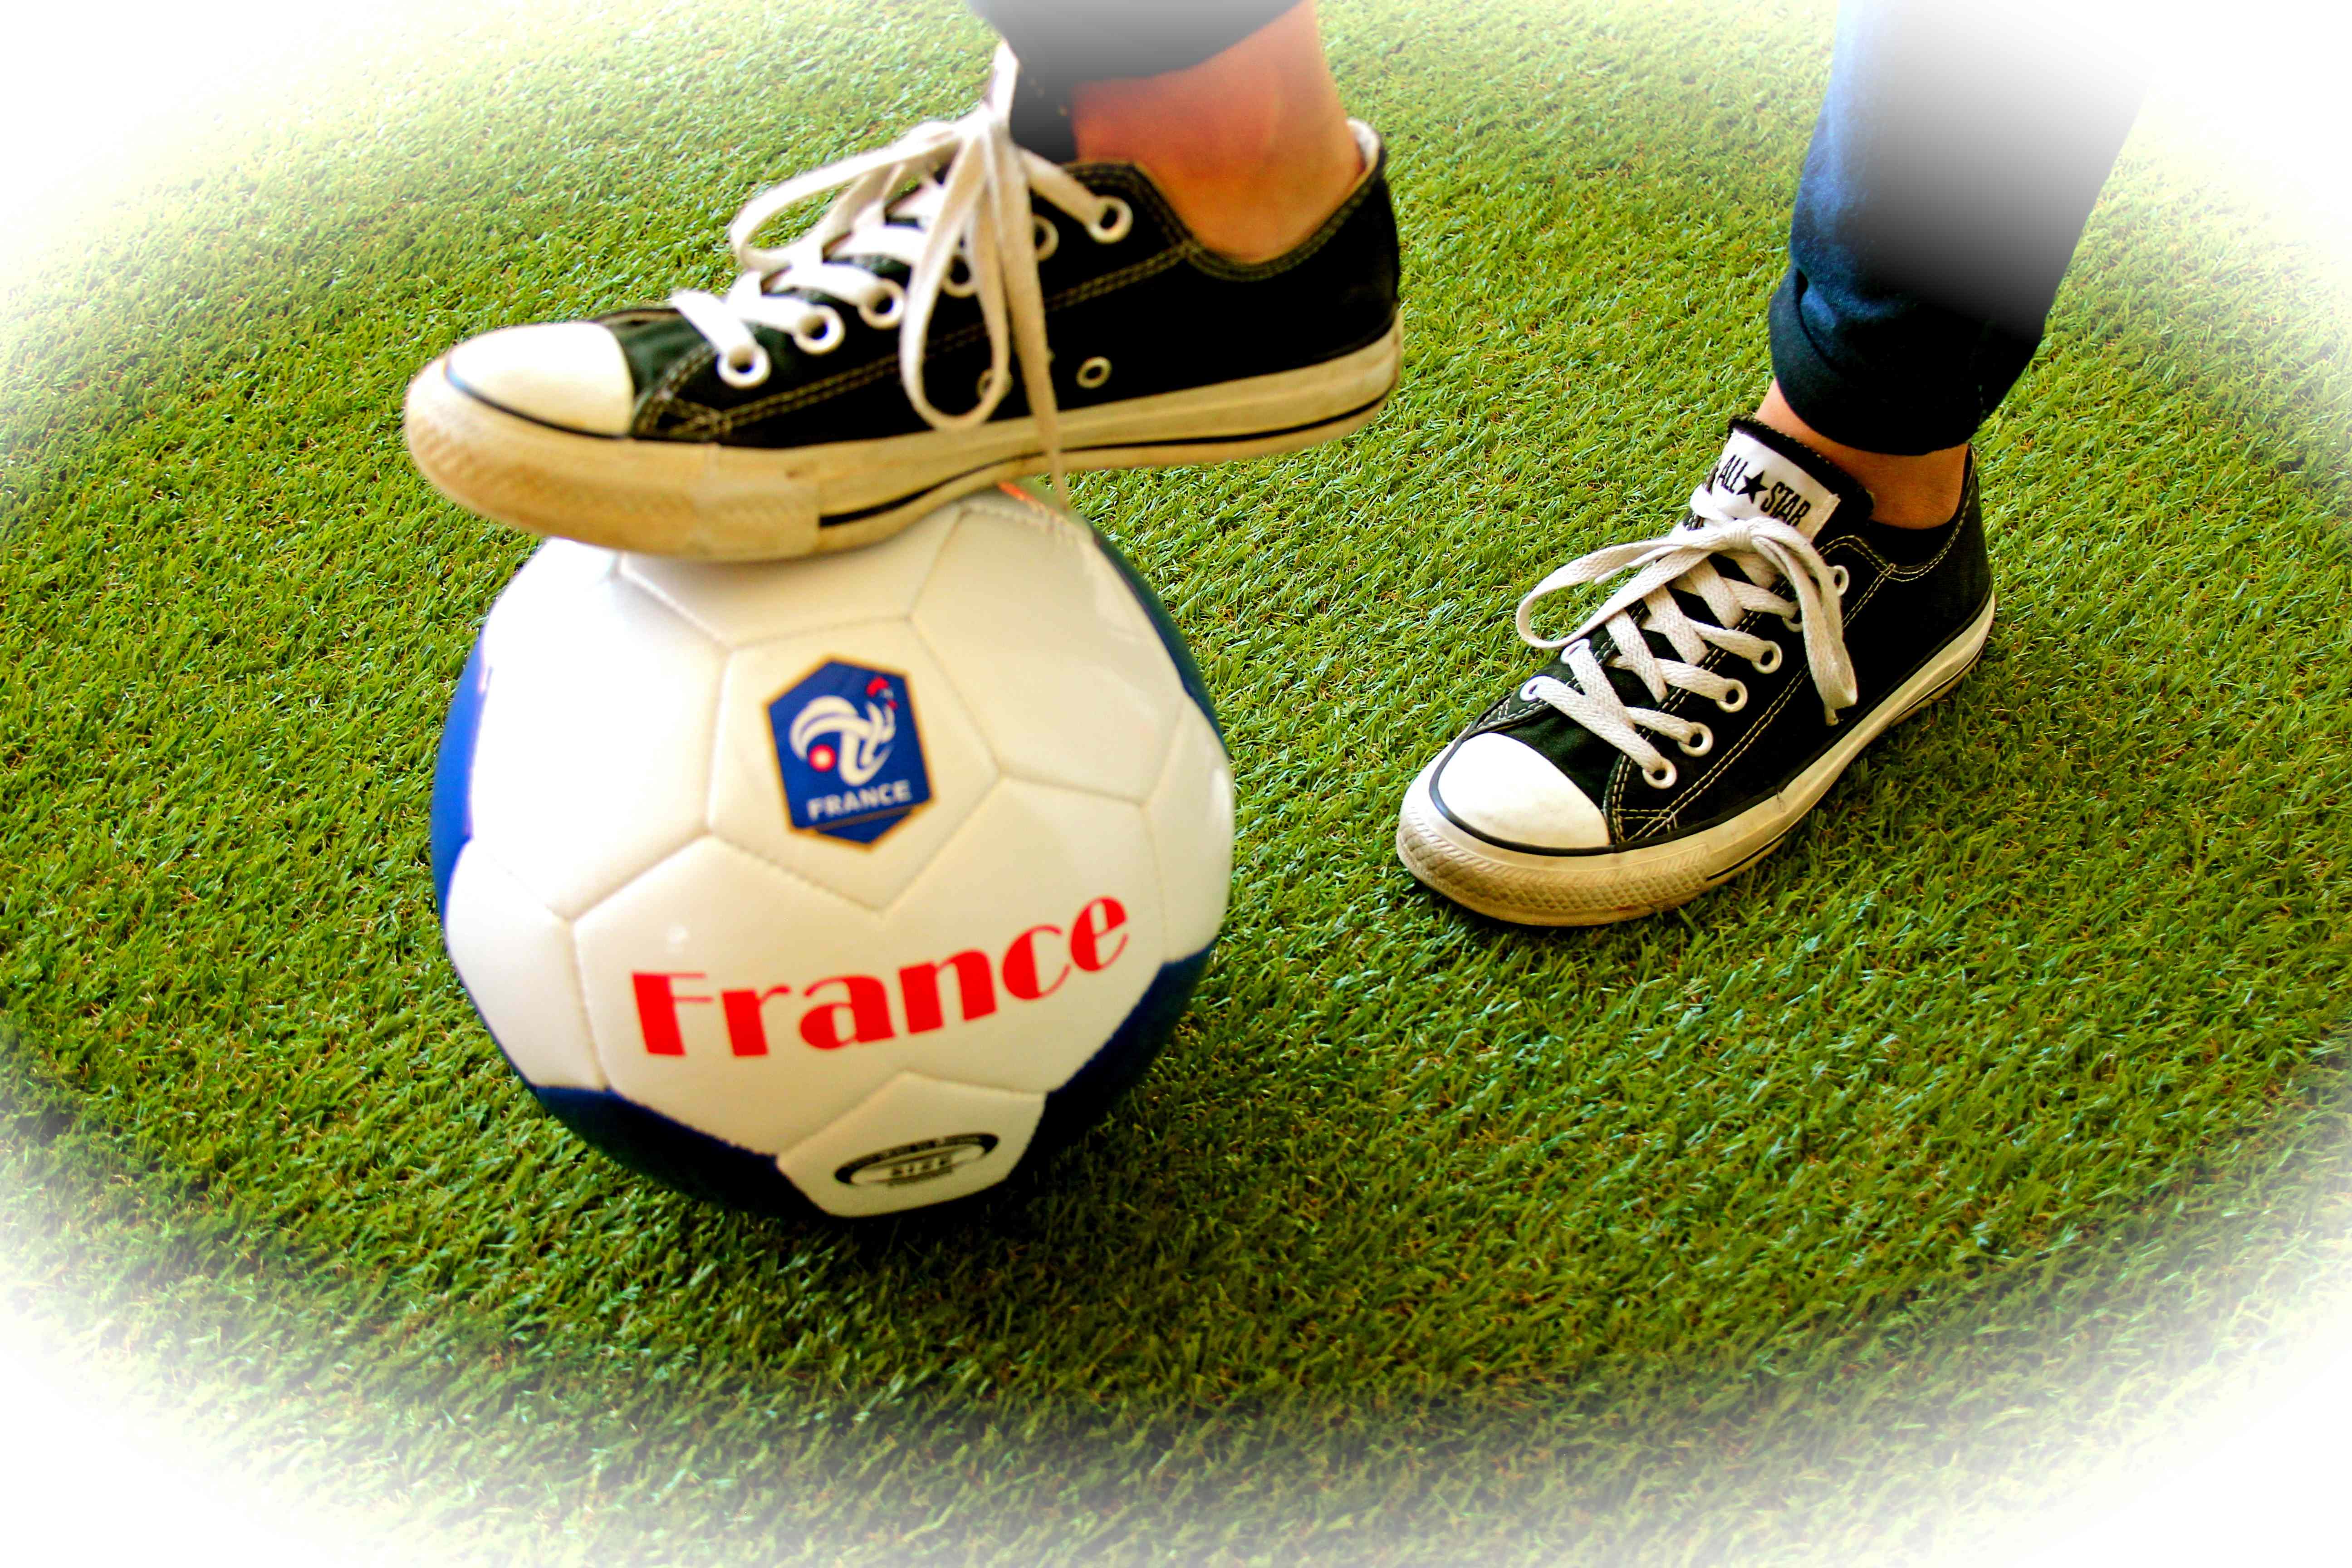 Fussball France.jpg